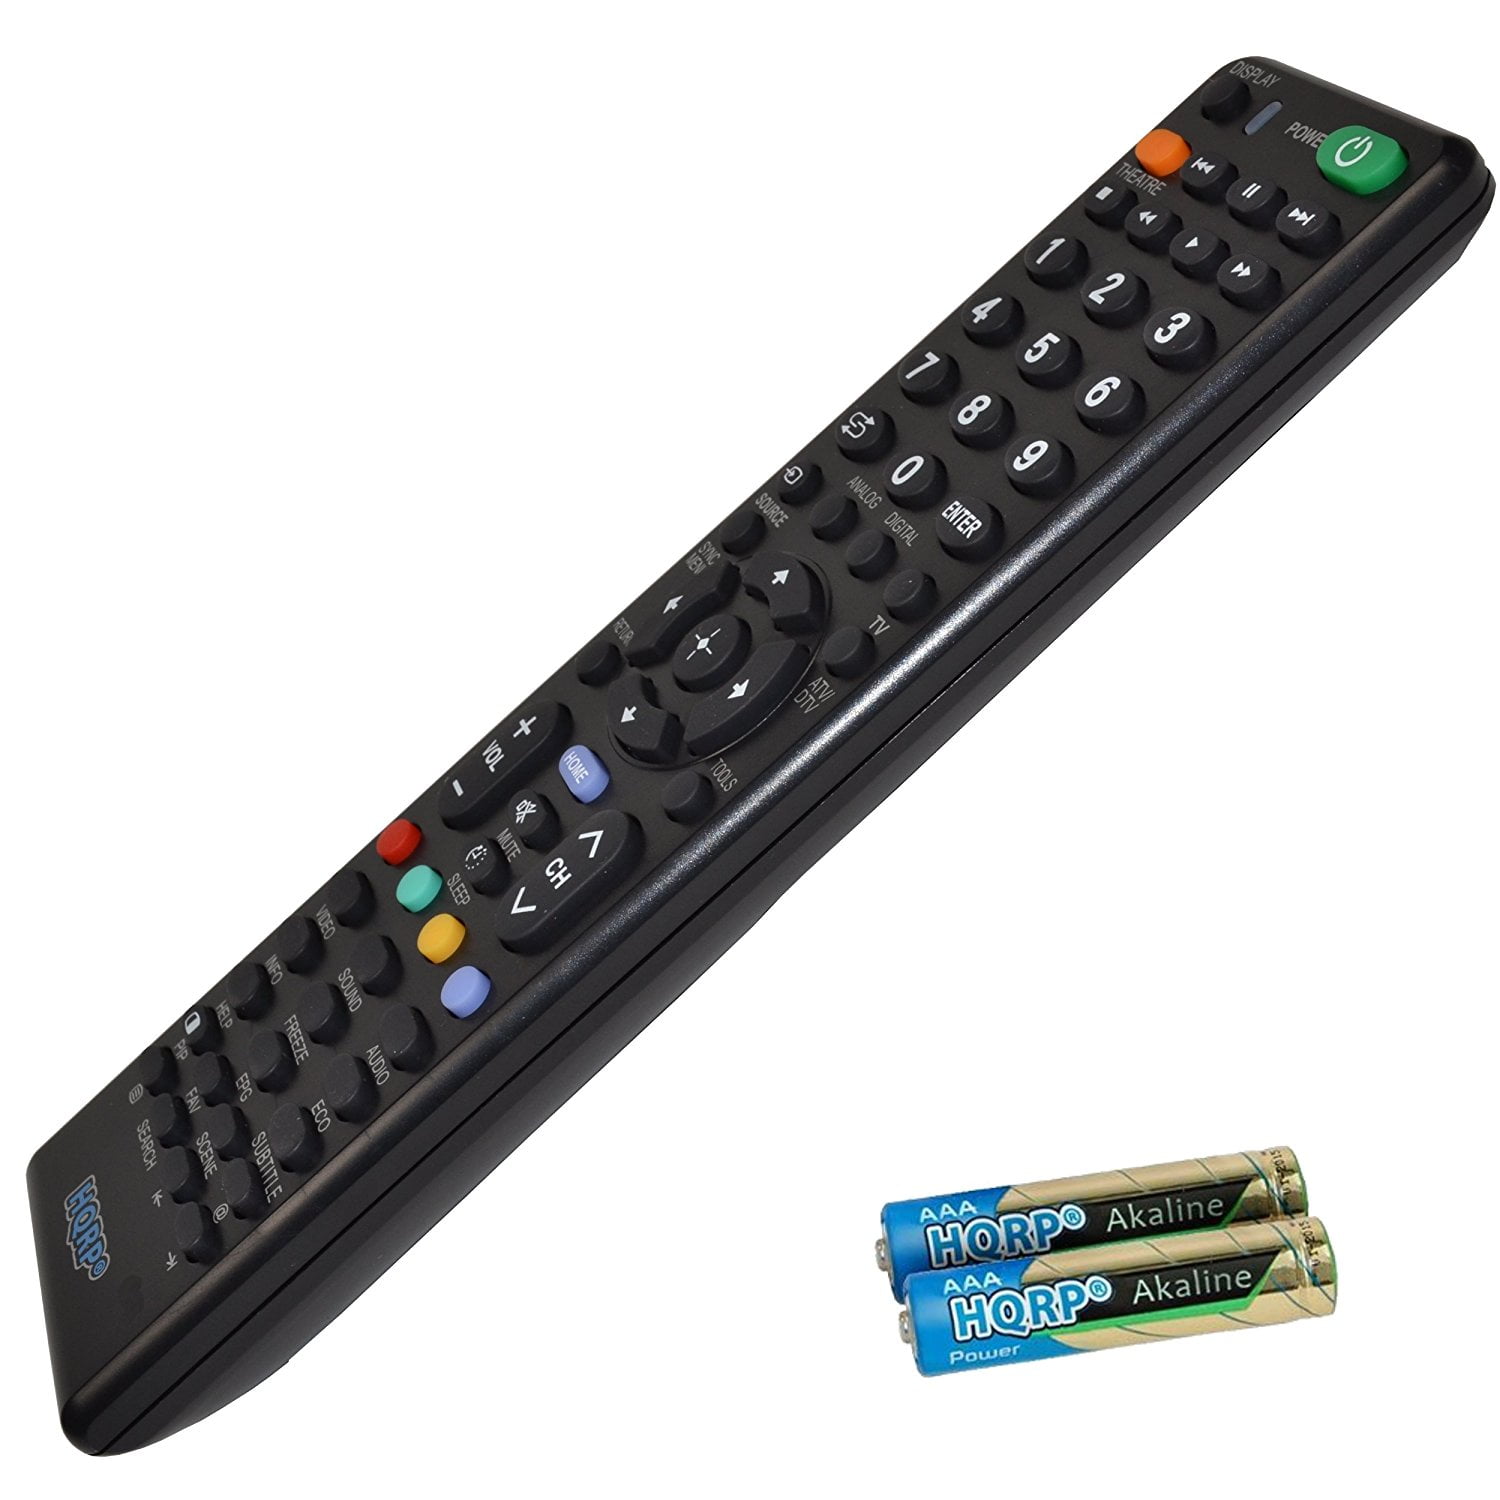 Remote Control for Sony TV KDL40HX700 